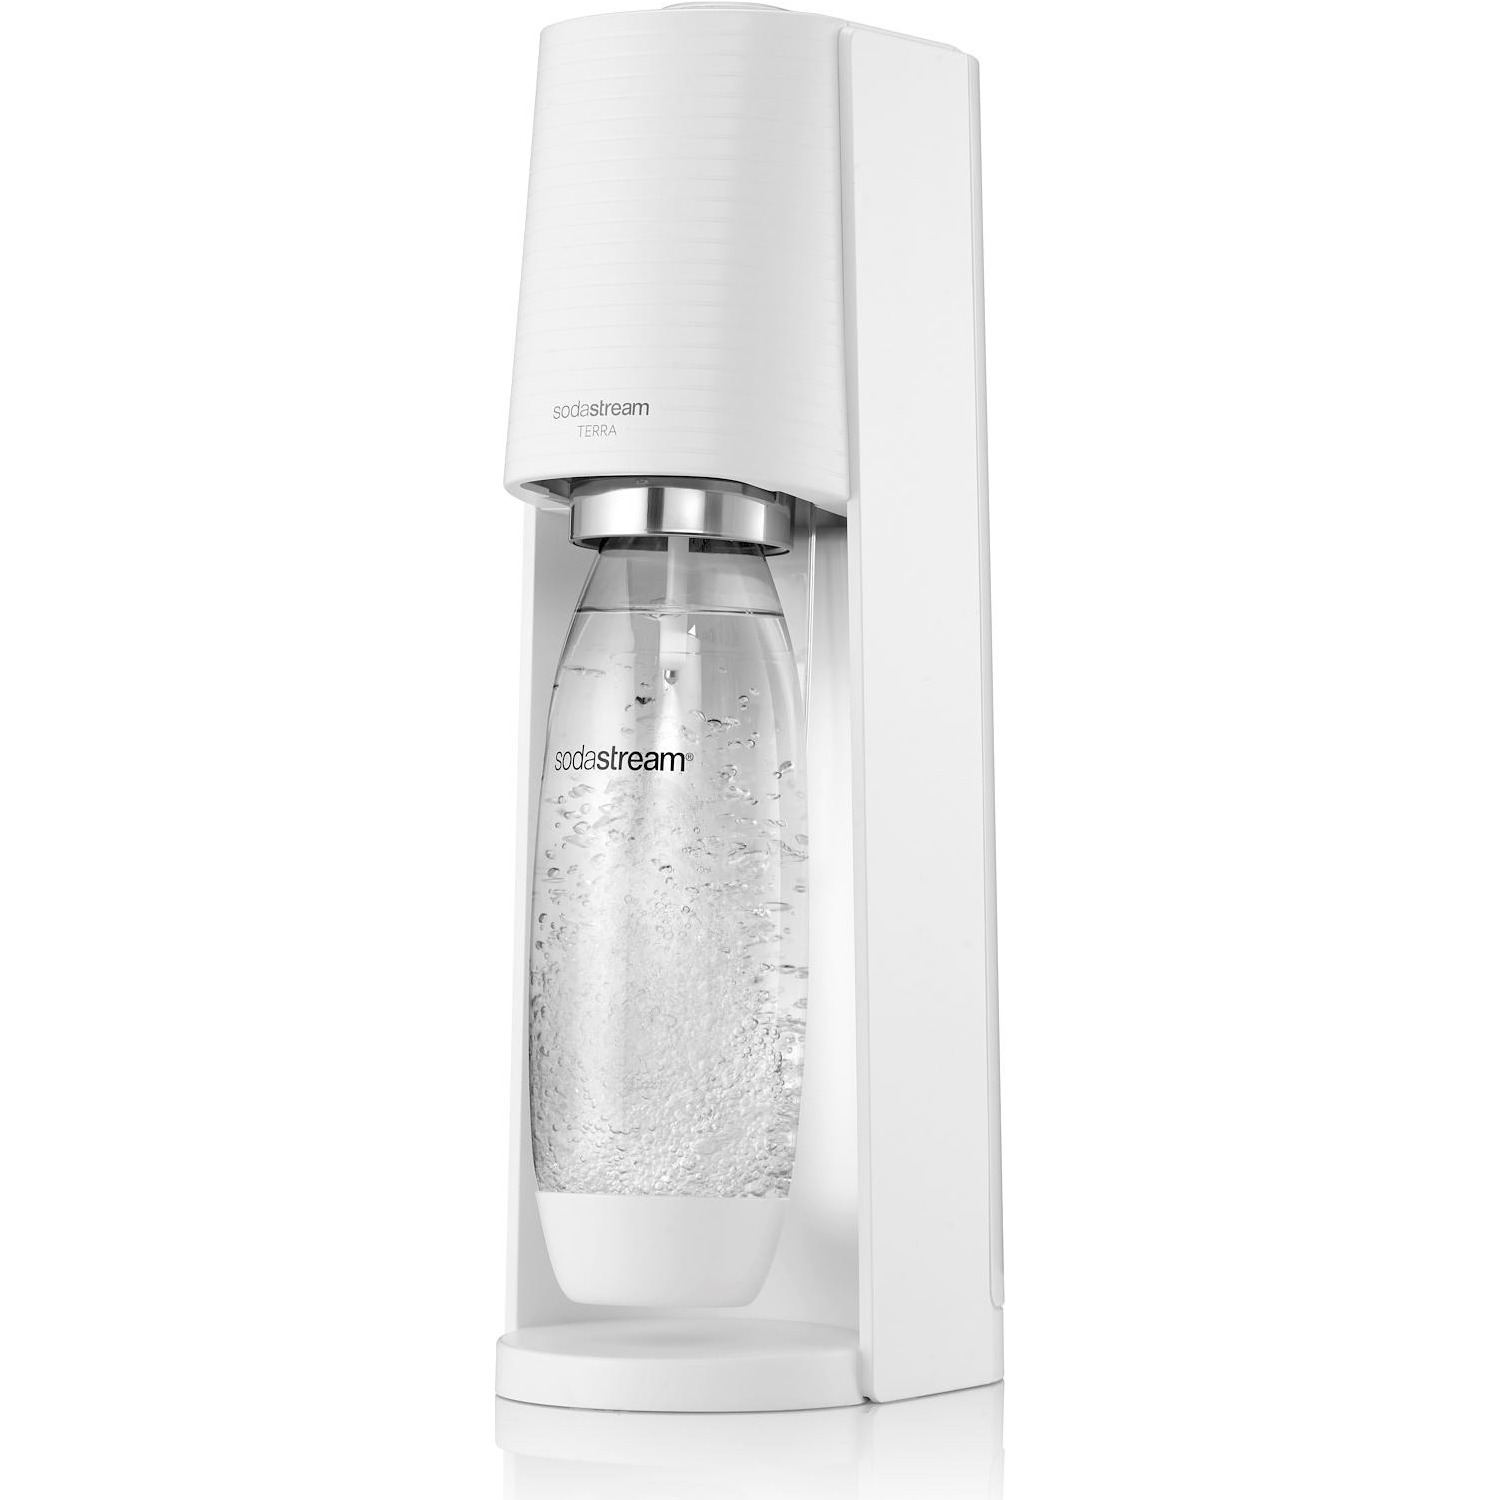 Immagine per Gasatore acqua Sodastream Terra white bianco con 1 bottiglia lavabile in lavastoviglie da 1LT + 1 ci da DIMOStore